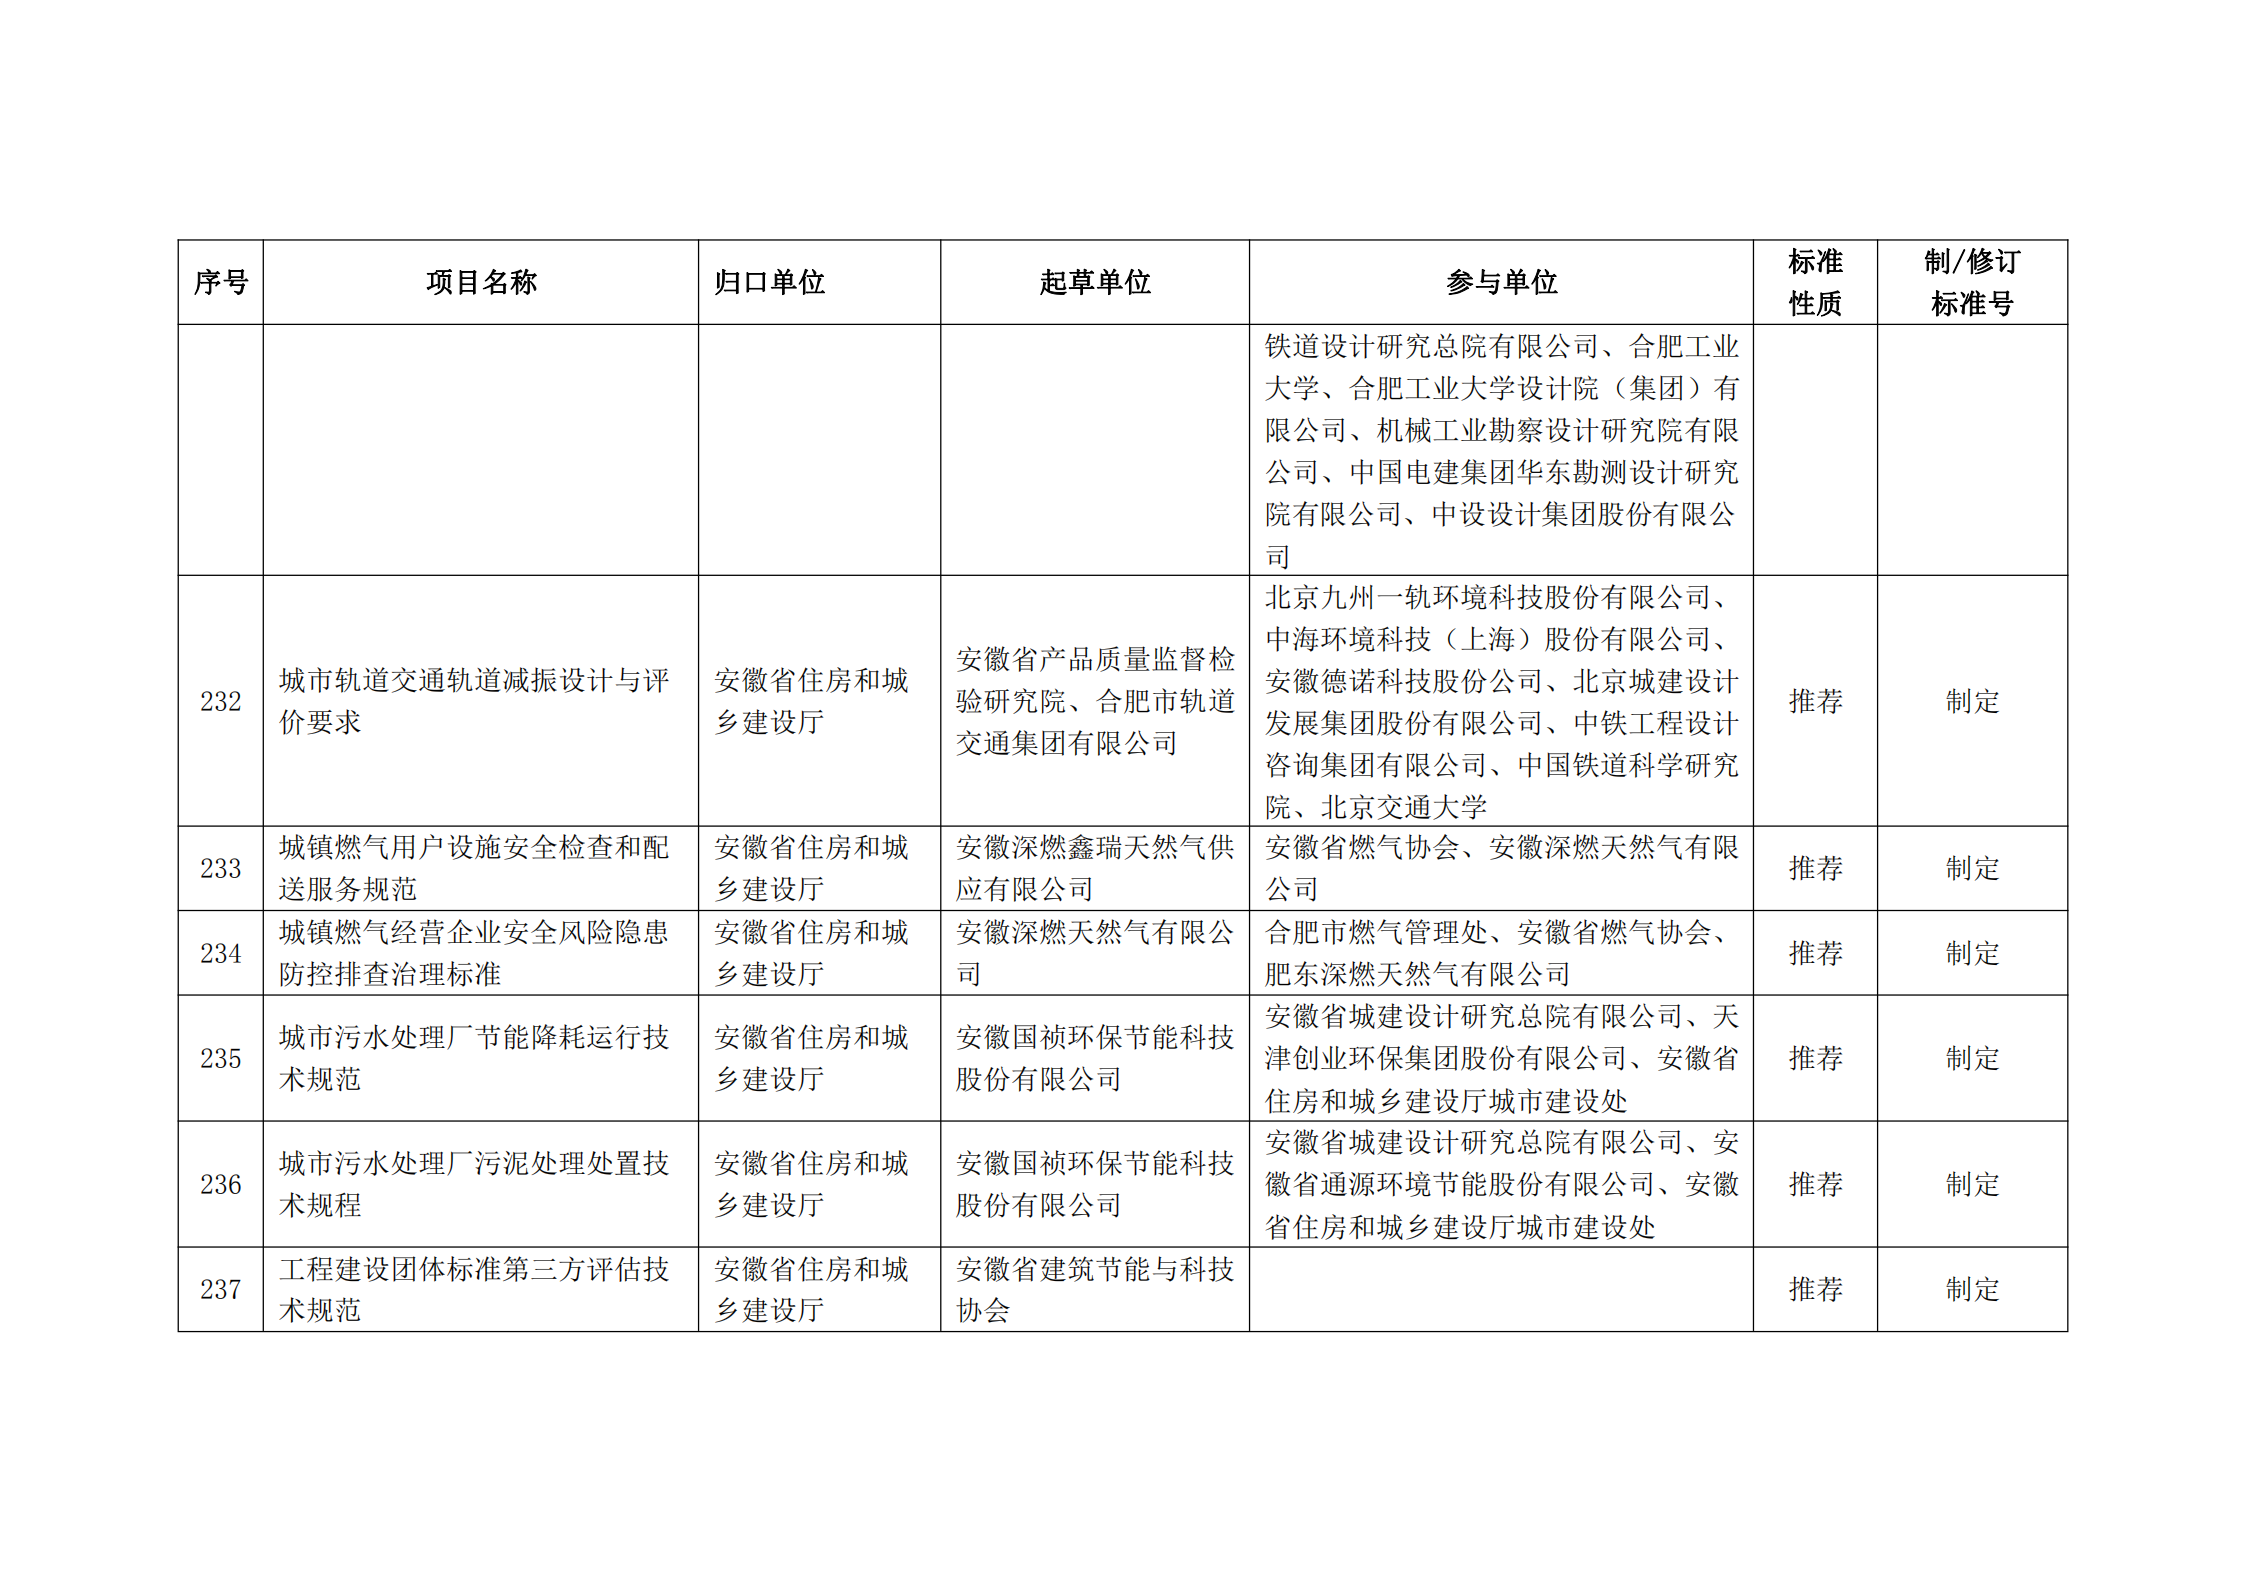 2020 年第二批安徽省地方标准制、修订计划项目汇总表(图26)